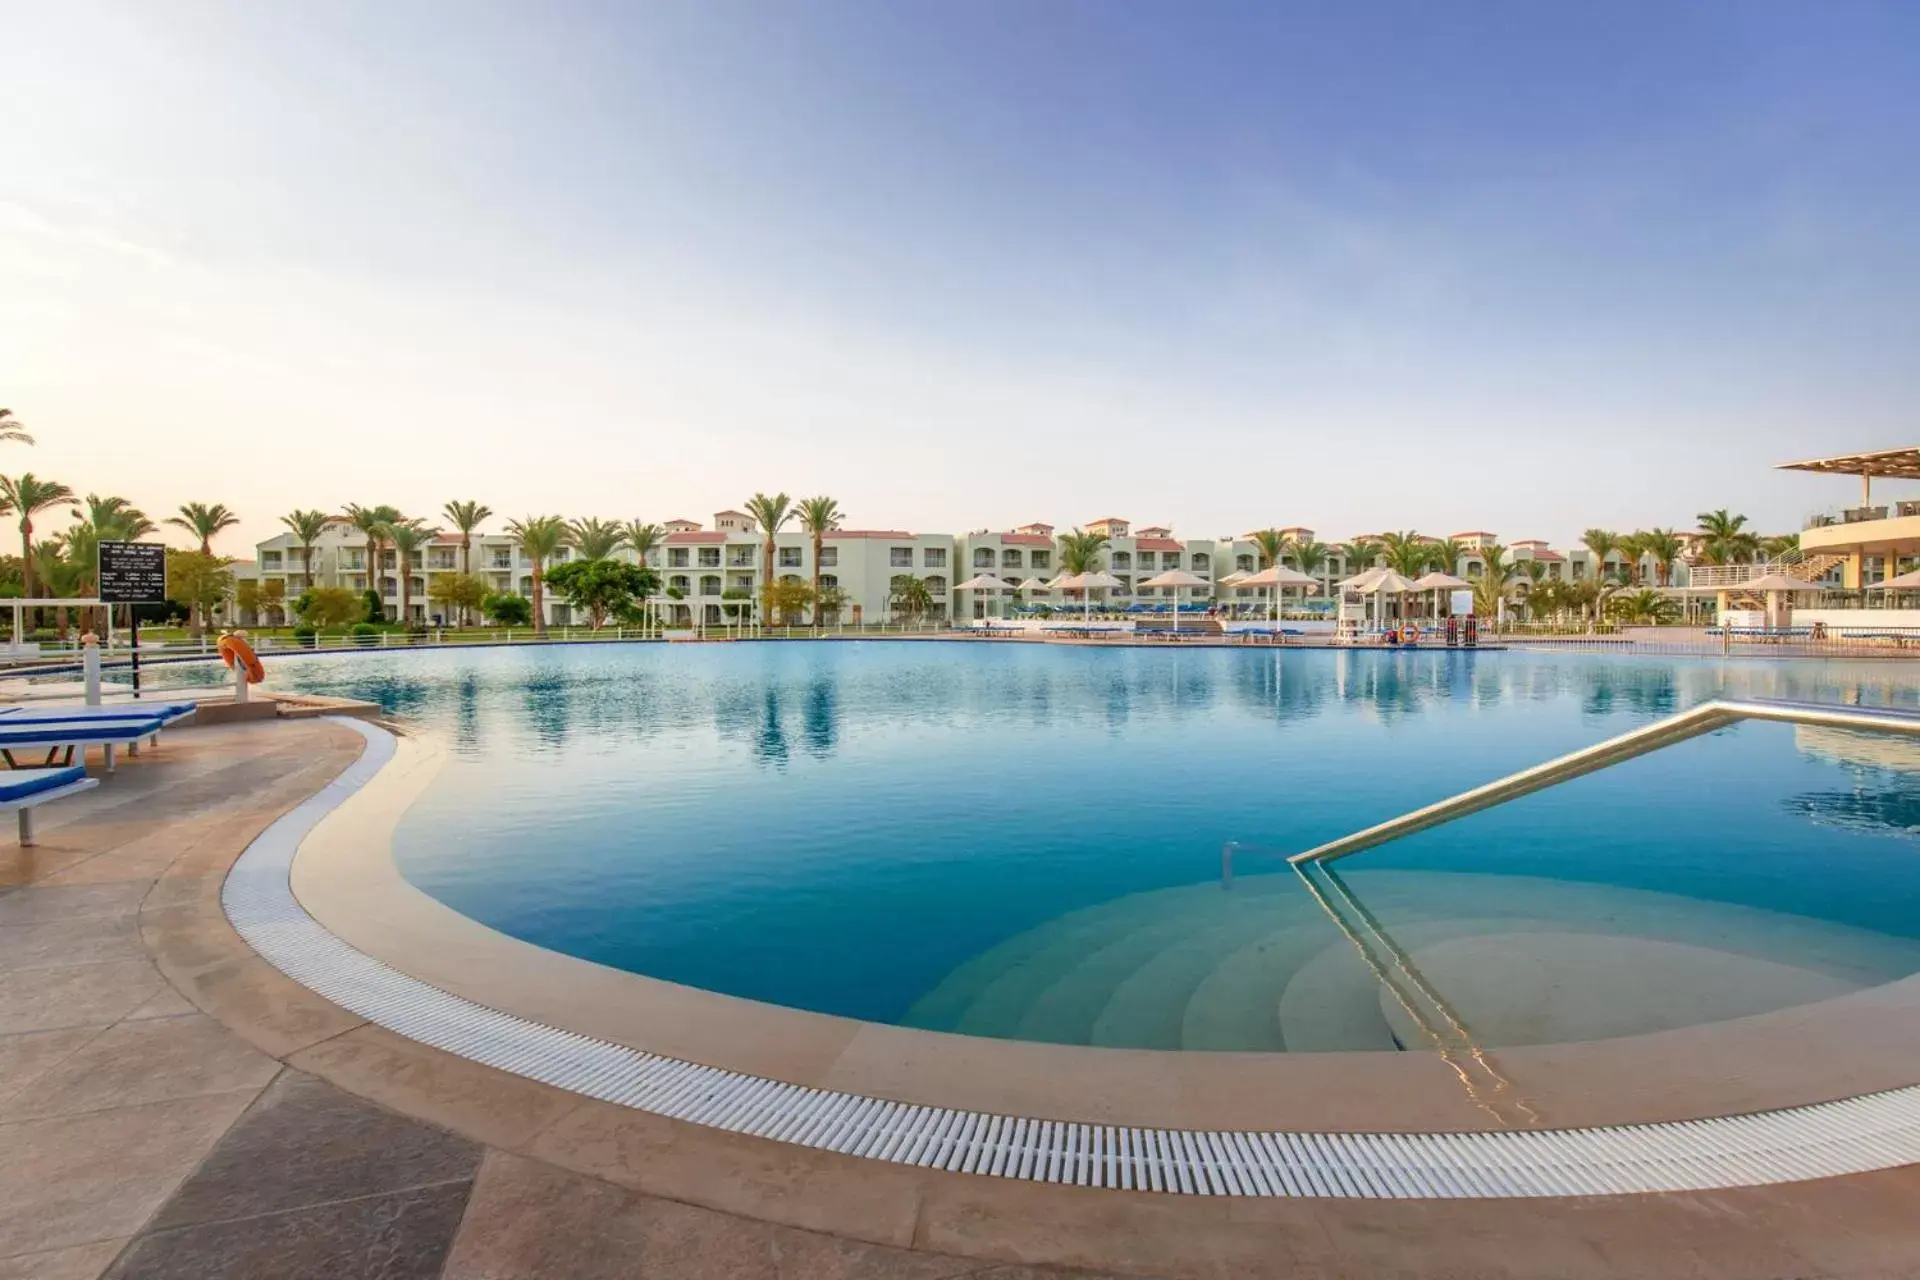 Swimming Pool in Pickalbatros Dana Beach Resort - Hurghada